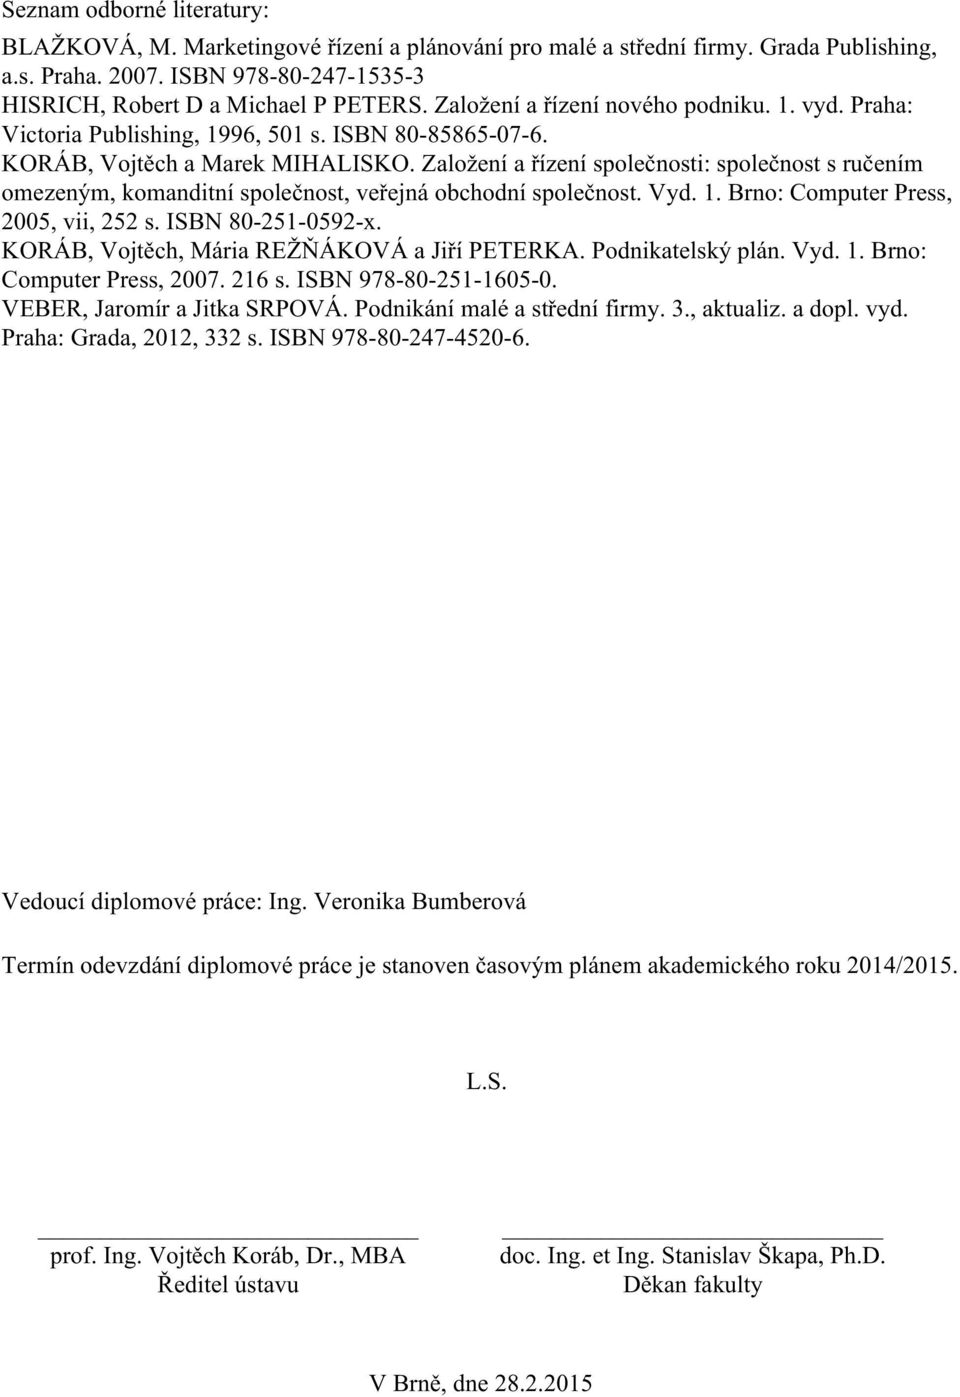 Založení a řízení společnosti: společnost s ručením omezeným, komanditní společnost, veřejná obchodní společnost. Vyd. 1. Brno: Computer Press, 2005, vii, 252 s. ISBN 80-251-0592-x.